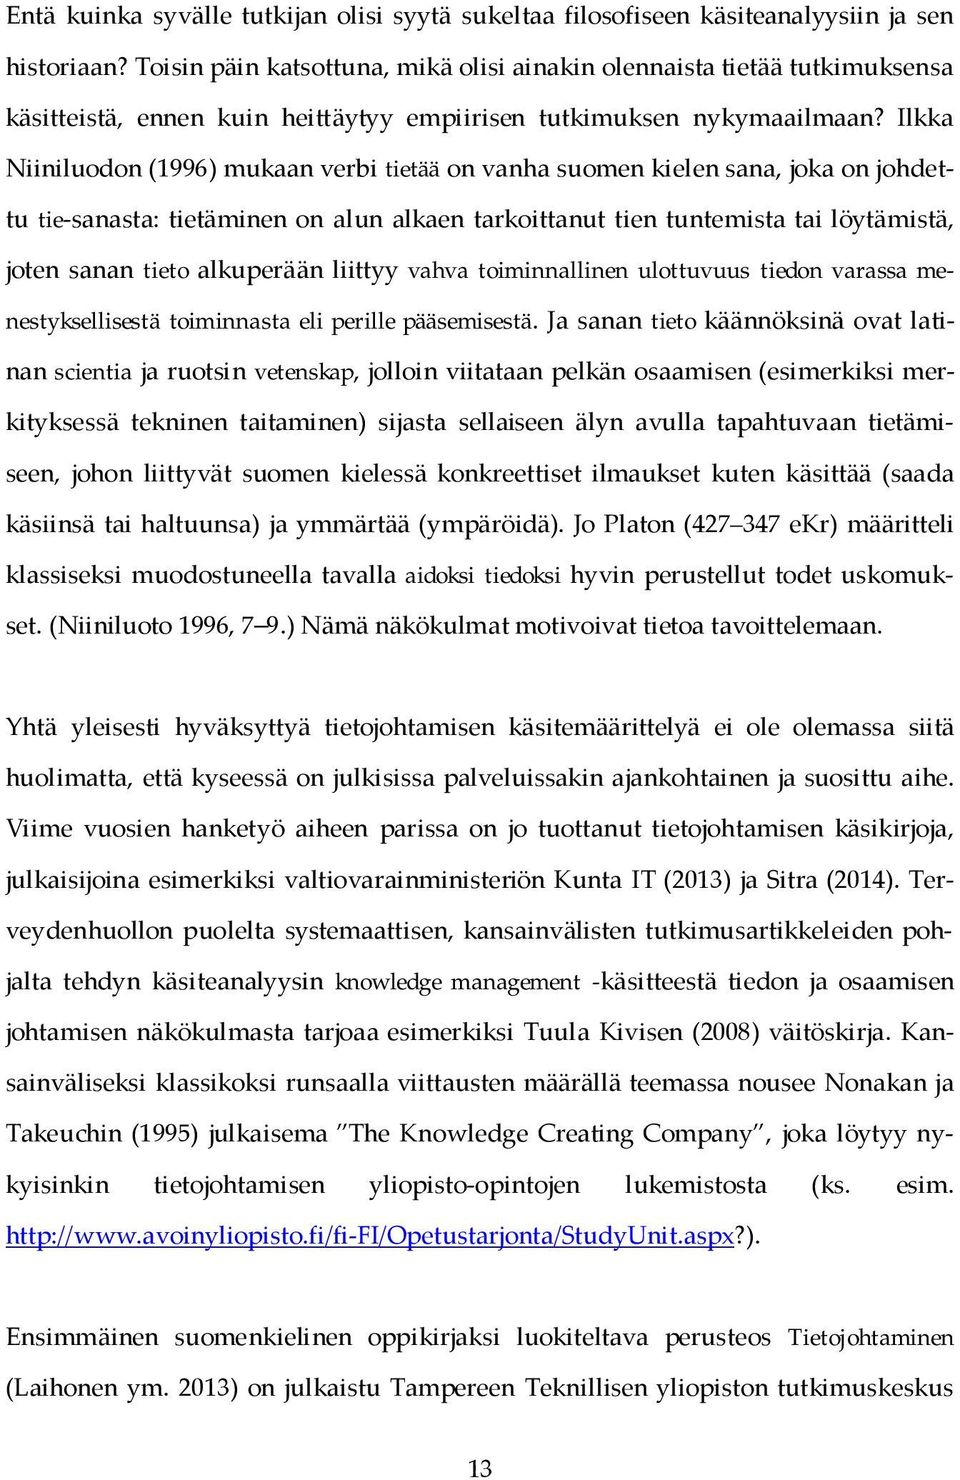 Ilkka Niiniluodon (1996) mukaan verbi tietää on vanha suomen kielen sana, joka on johdettu tie-sanasta: tietäminen on alun alkaen tarkoittanut tien tuntemista tai löytämistä, joten sanan tieto